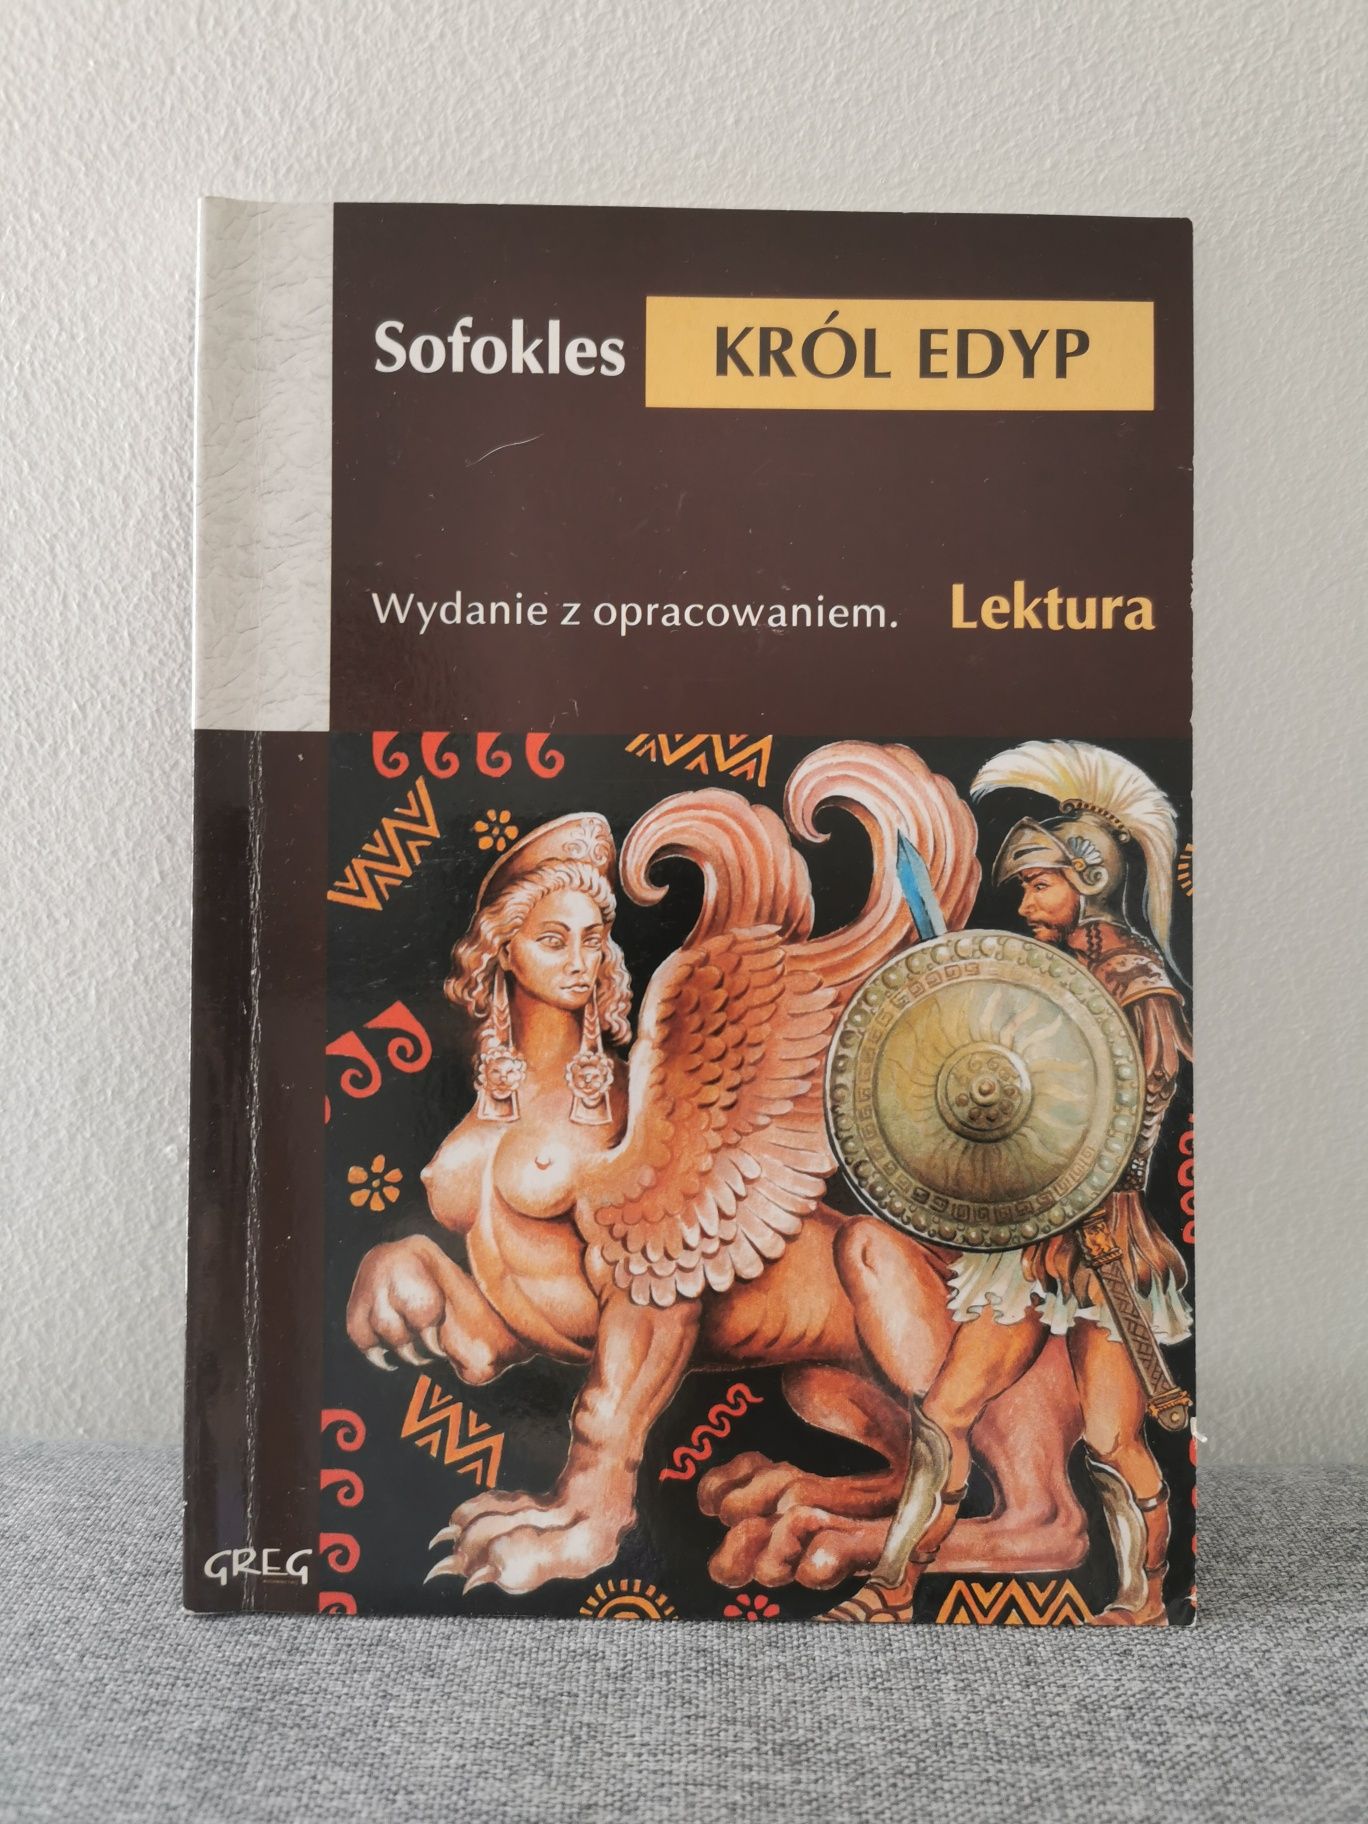 Król Edyp Sofokles Lektura wydanie z opracowaniem wydawnictwo Greg